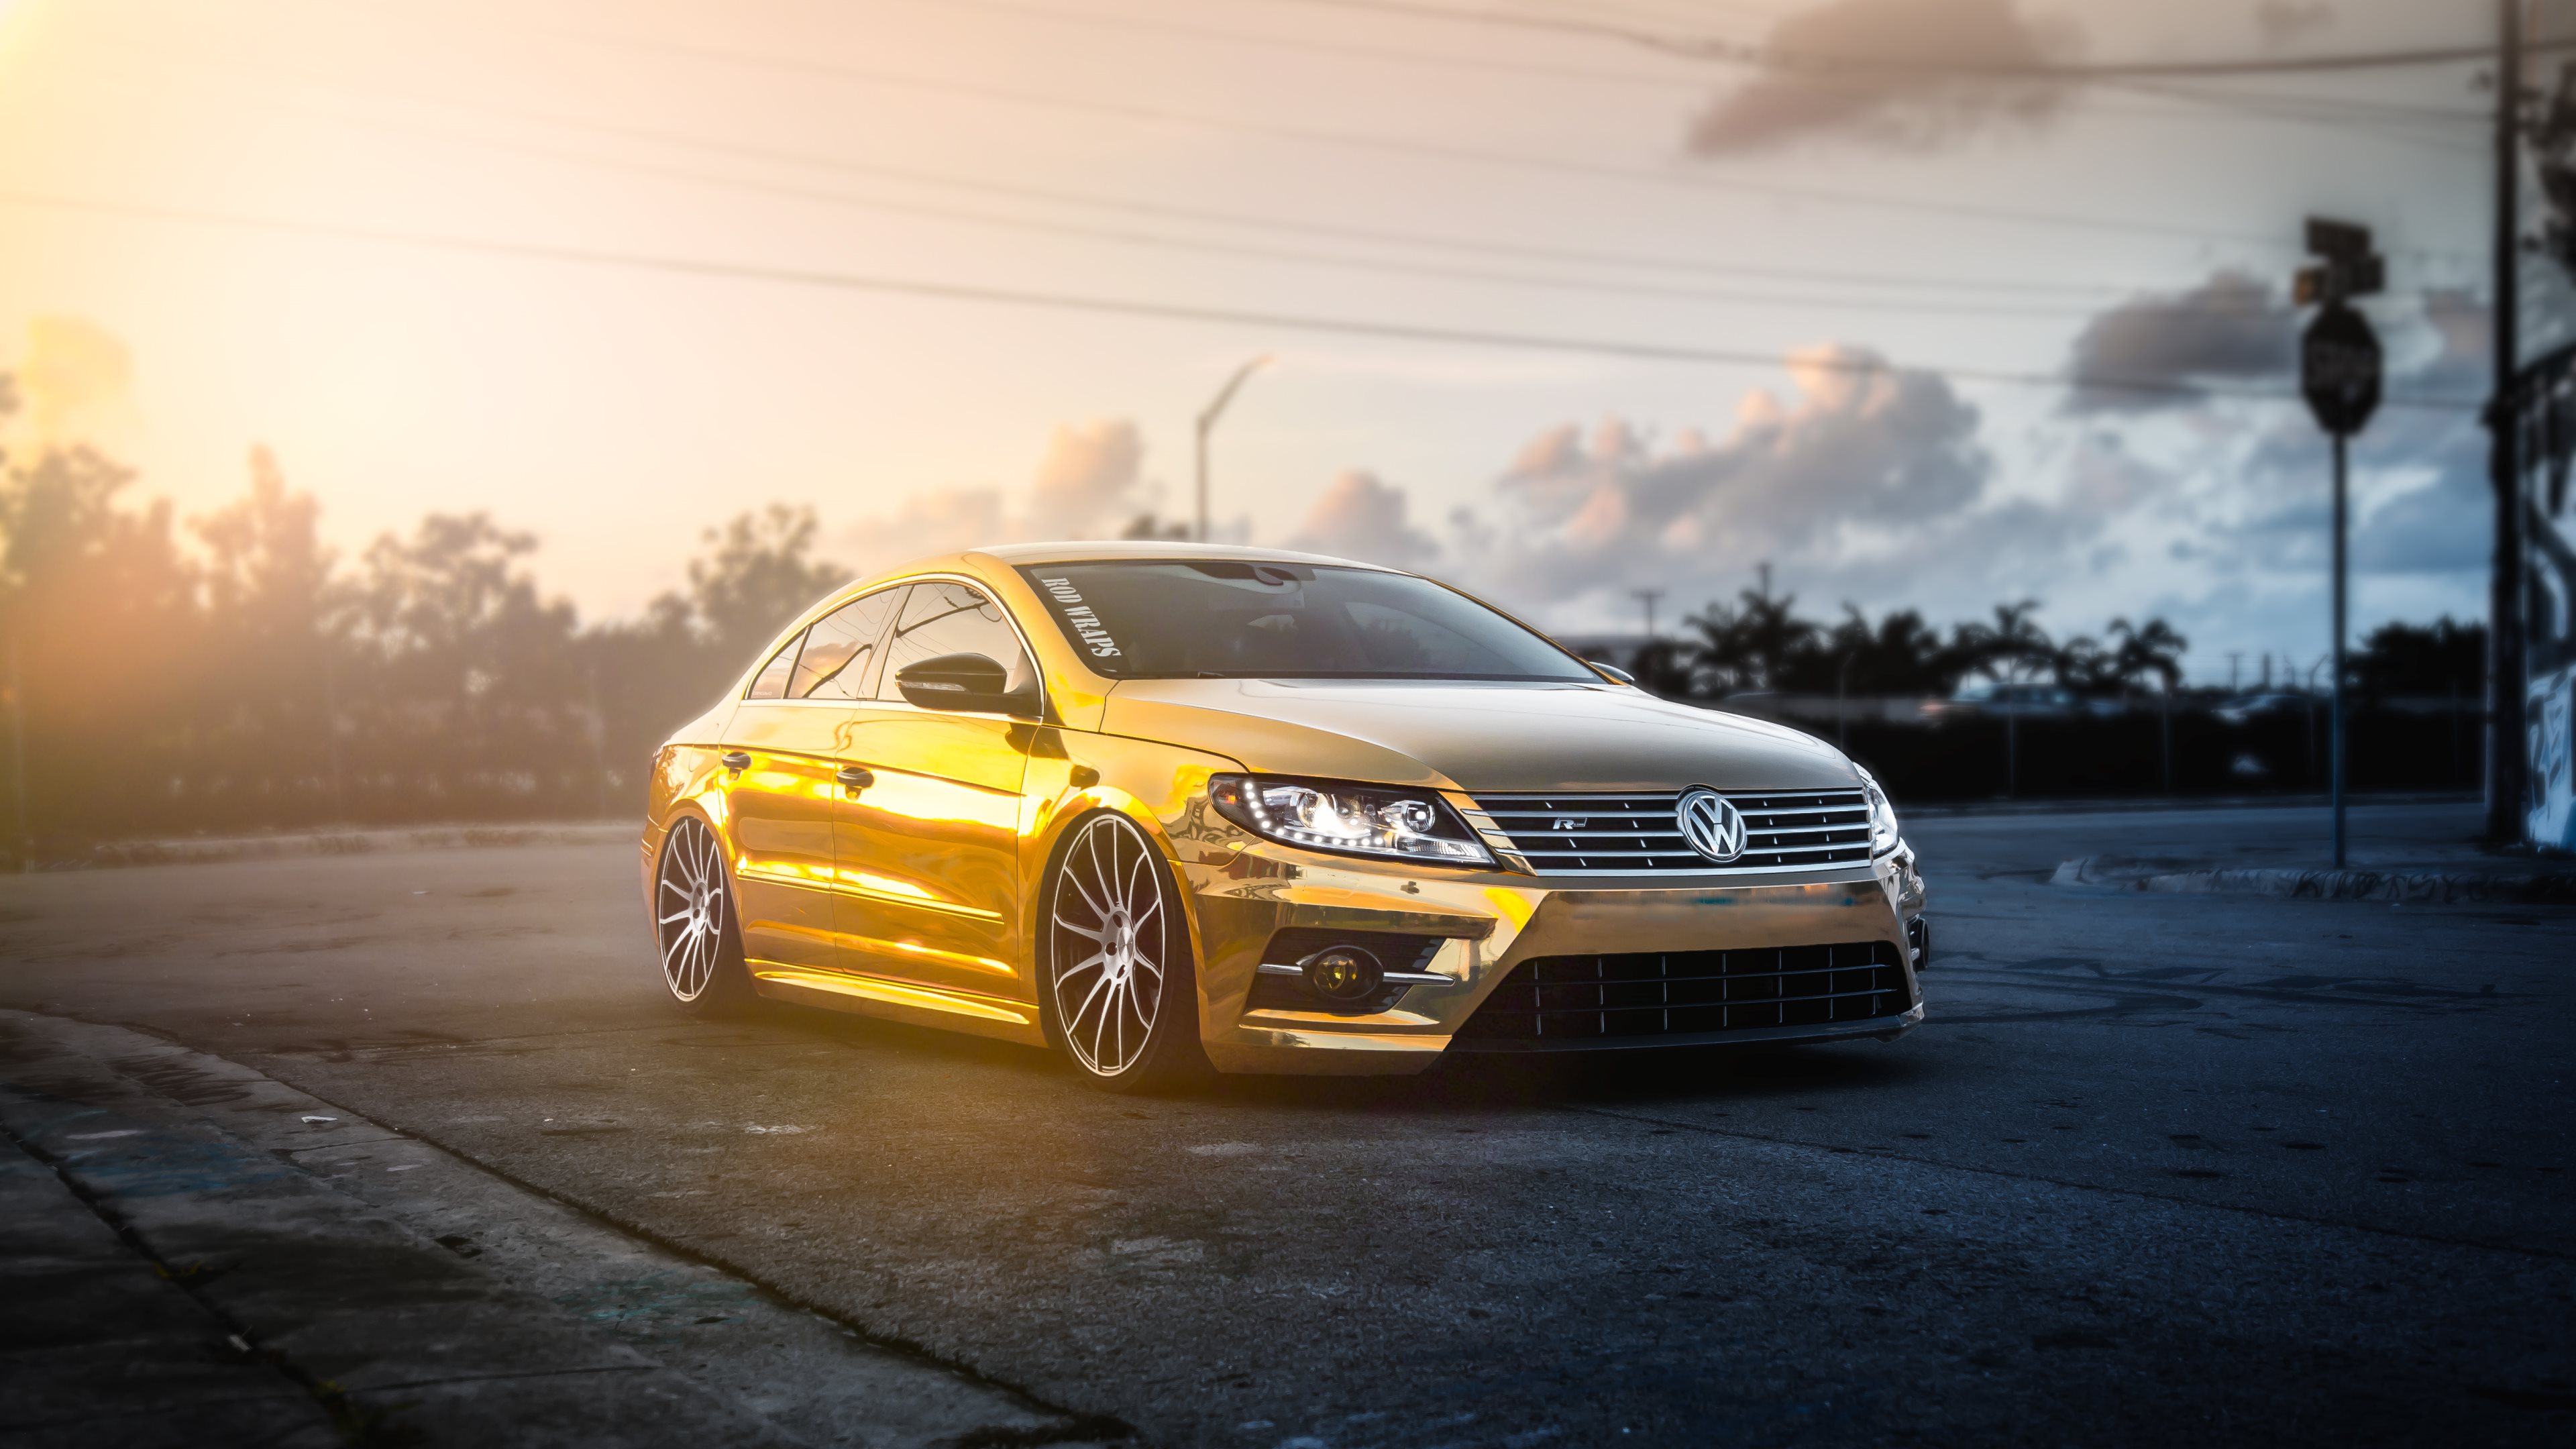 Volkswagen CC HD Wallpapers Backgrounds